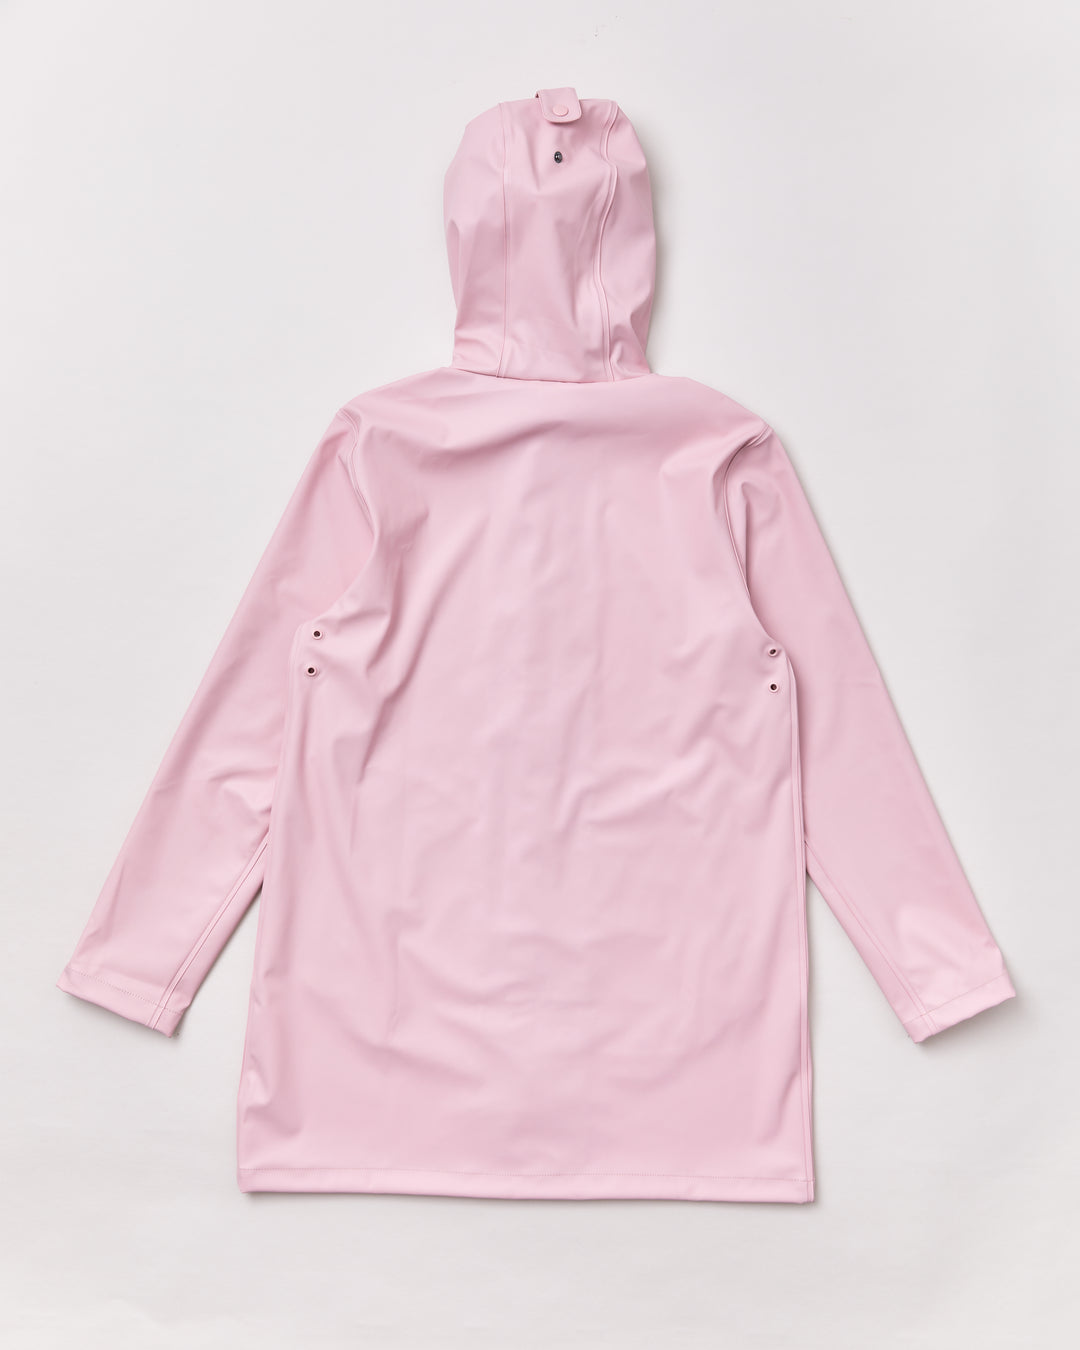 Adult Urban Jacket - Blush Pink